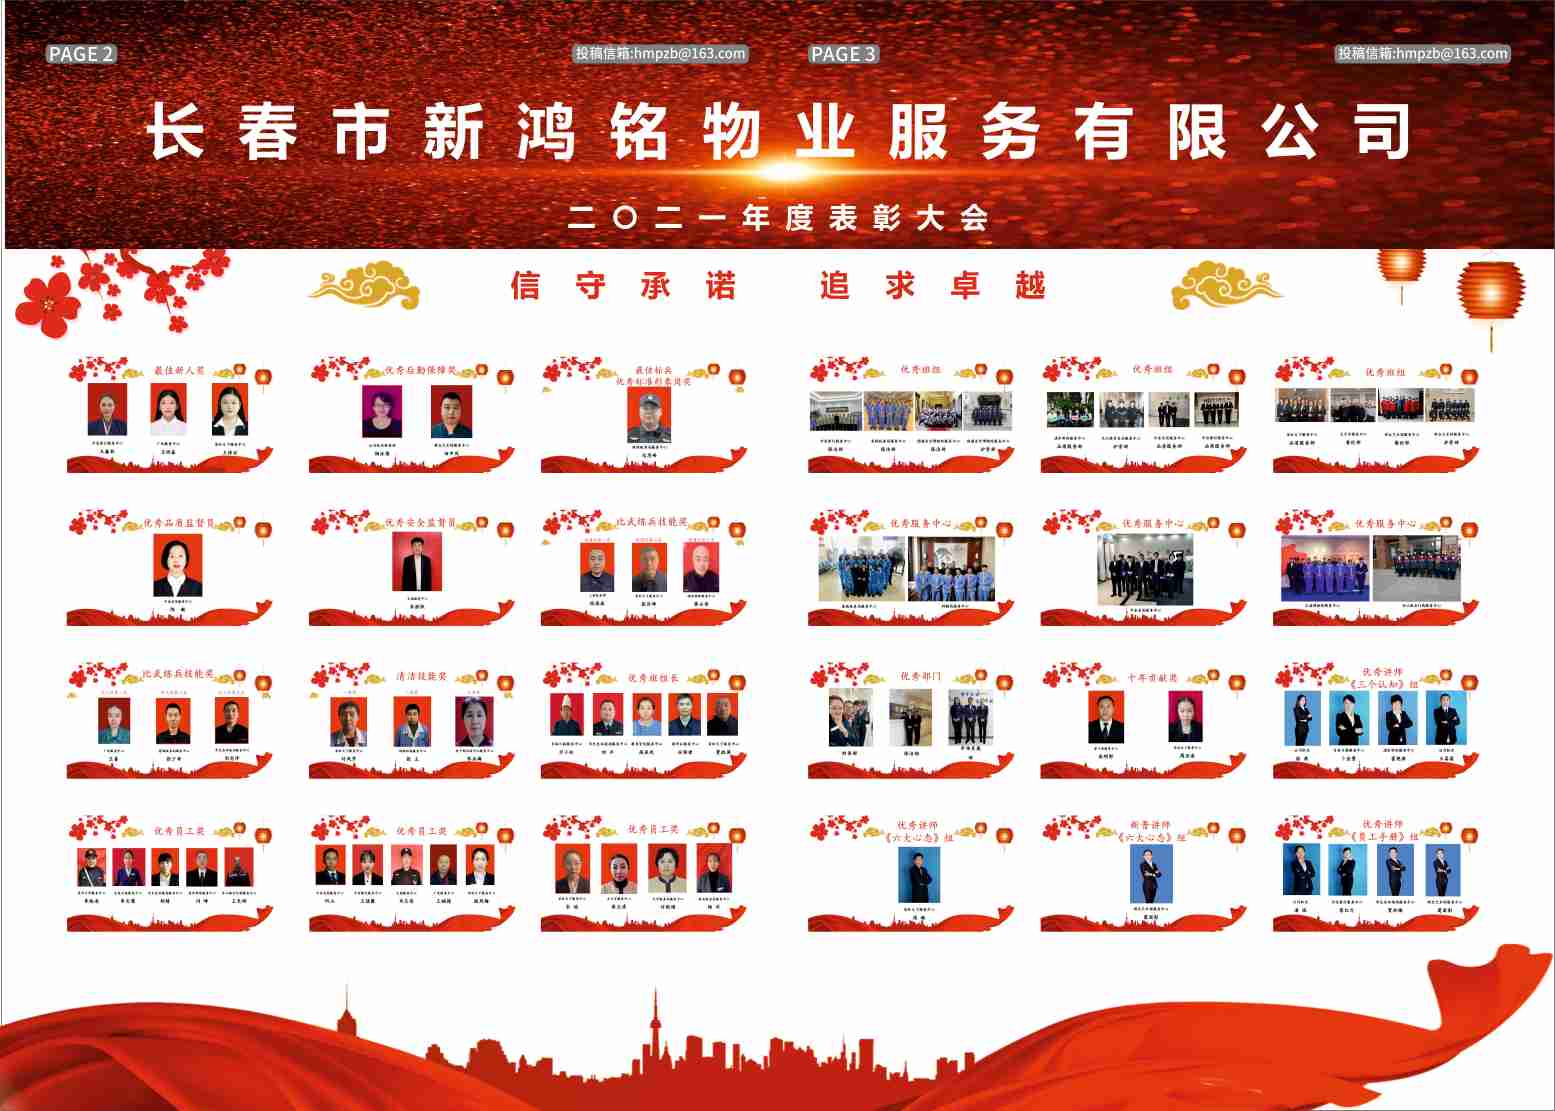 关于当前产品12bet手机版让投注更容易·(中国)官方网站的成功案例等相关图片